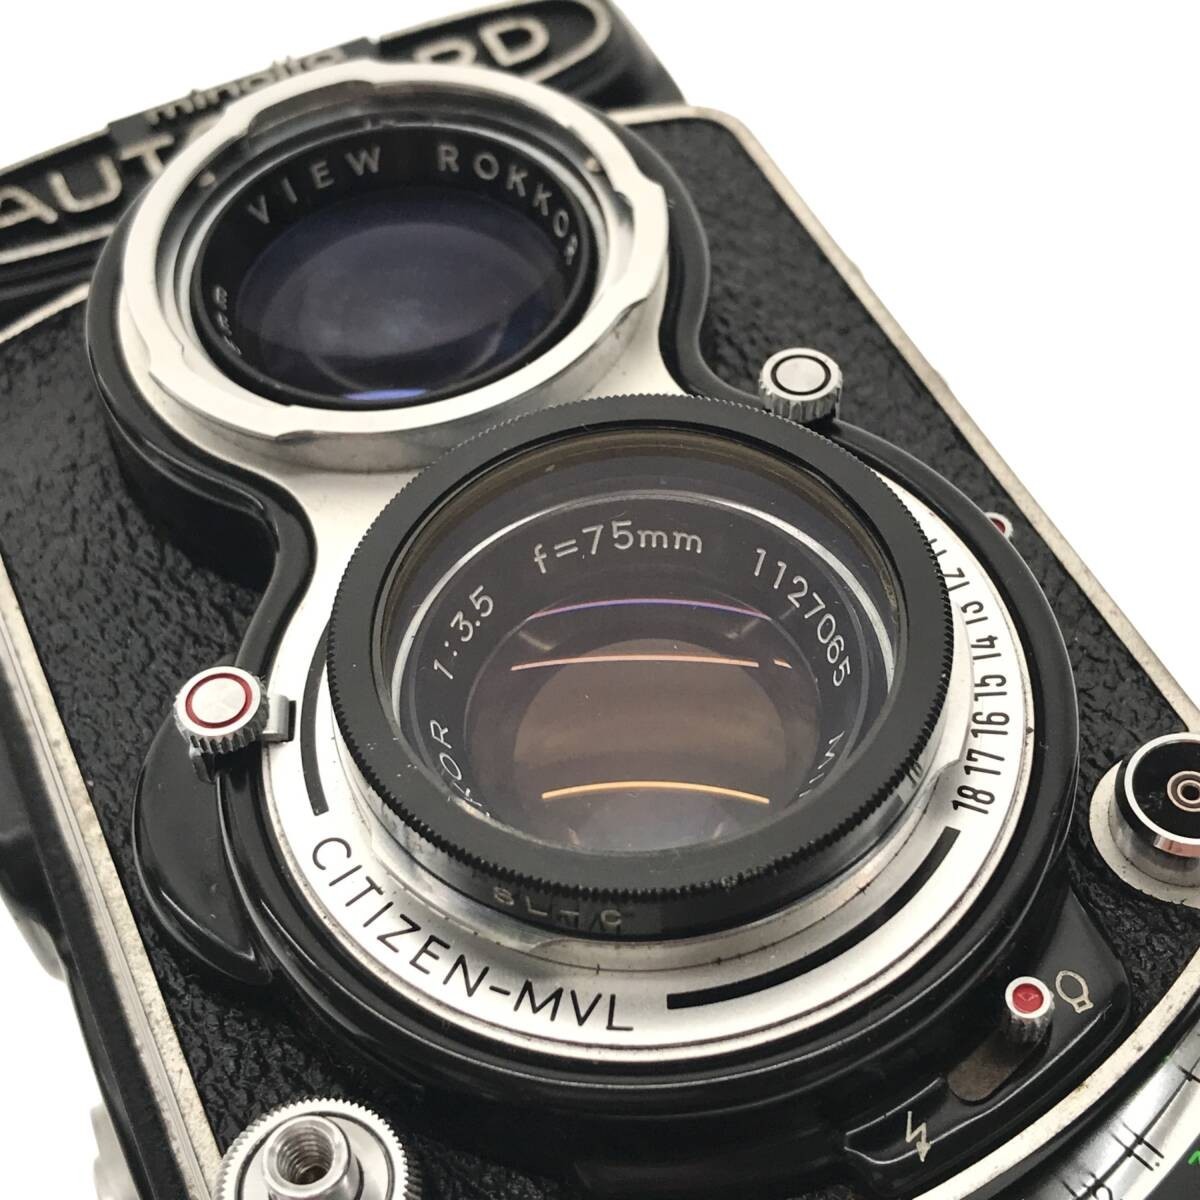 【動作品】minolta AUTOCORD III ROKKOR 75mm F3.5 ミノルタ オートコード 二眼レフカメラ 中判フィルムカメラ 単焦点レンズ 現状品 C3886_画像10